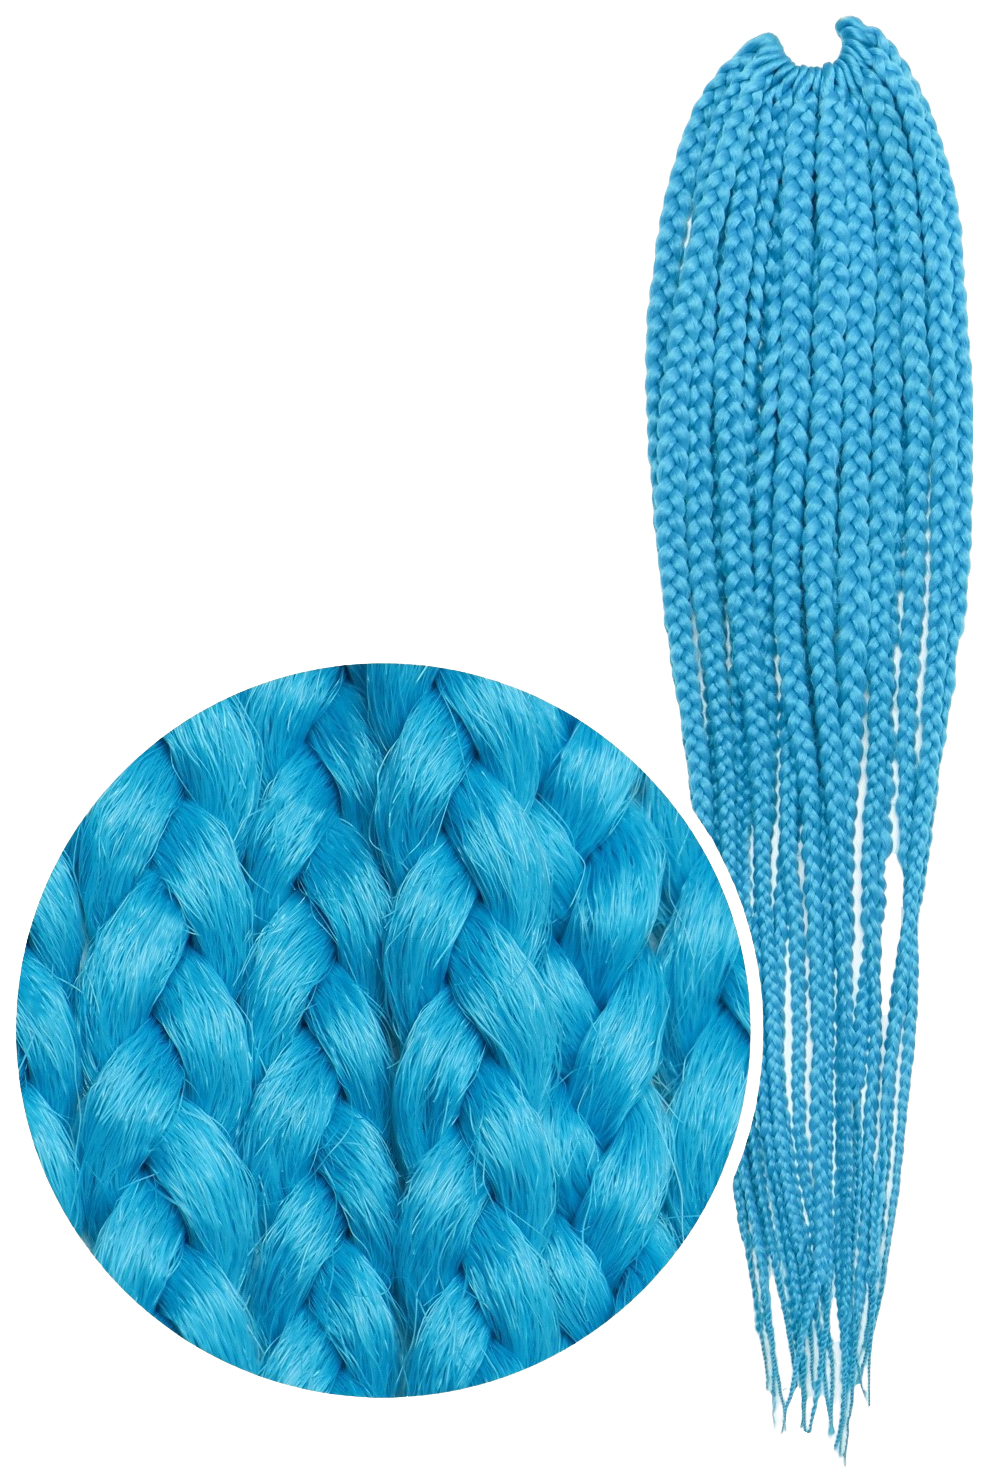 Афрокосы Queen Fair Sim-Braids CE 18 прядей 60 см цвет светло-голубой IlI Blue sim braids афрокосы 60 см 18 прядей ce малиновый pink